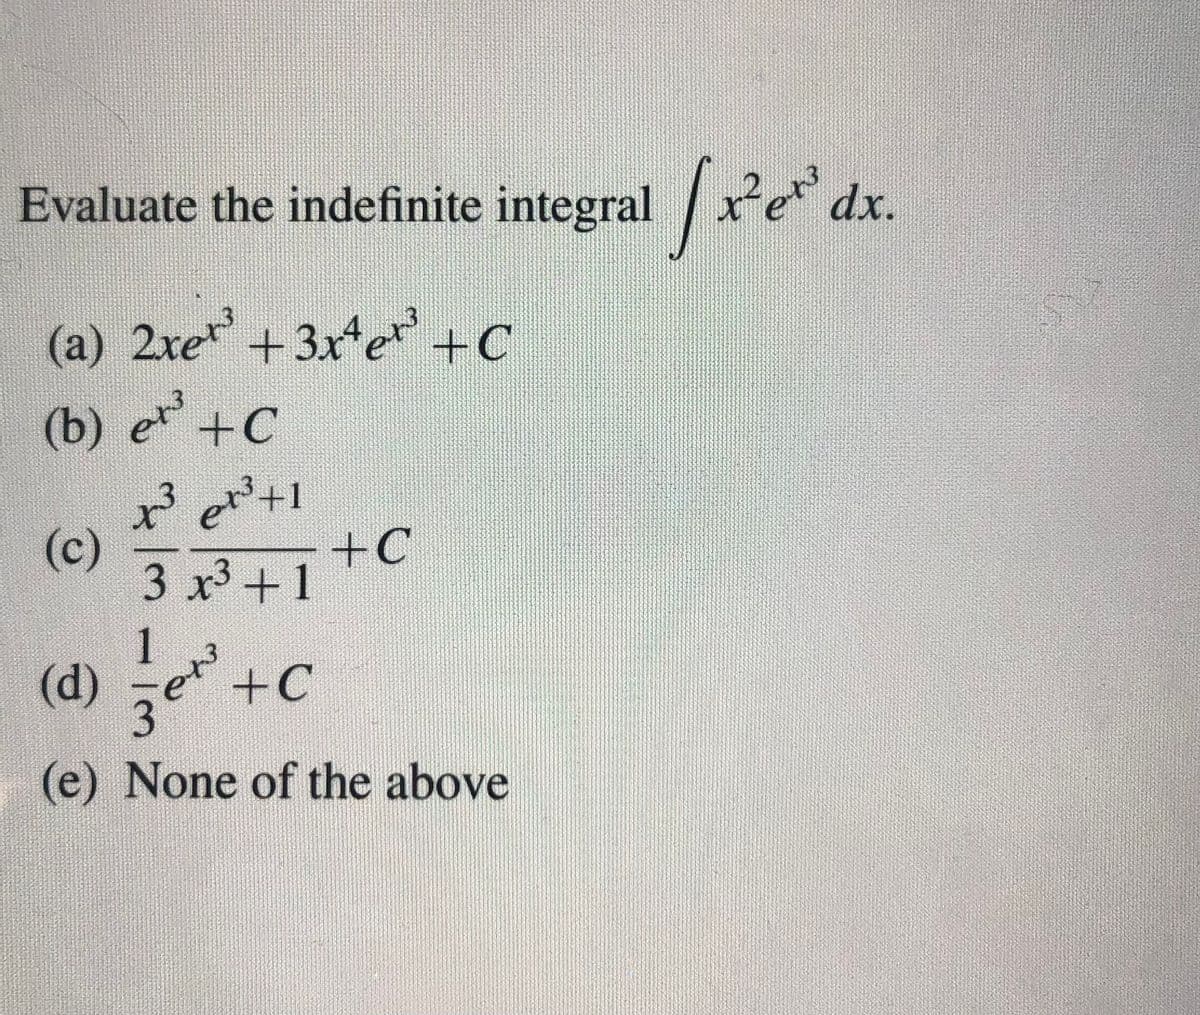 Evaluate the indefinite integral x dx.
(a) 2xe+3x*e +c
(b) e +C
(c)
3 x3+1
+C
1
(d) e
(e) None of the above
